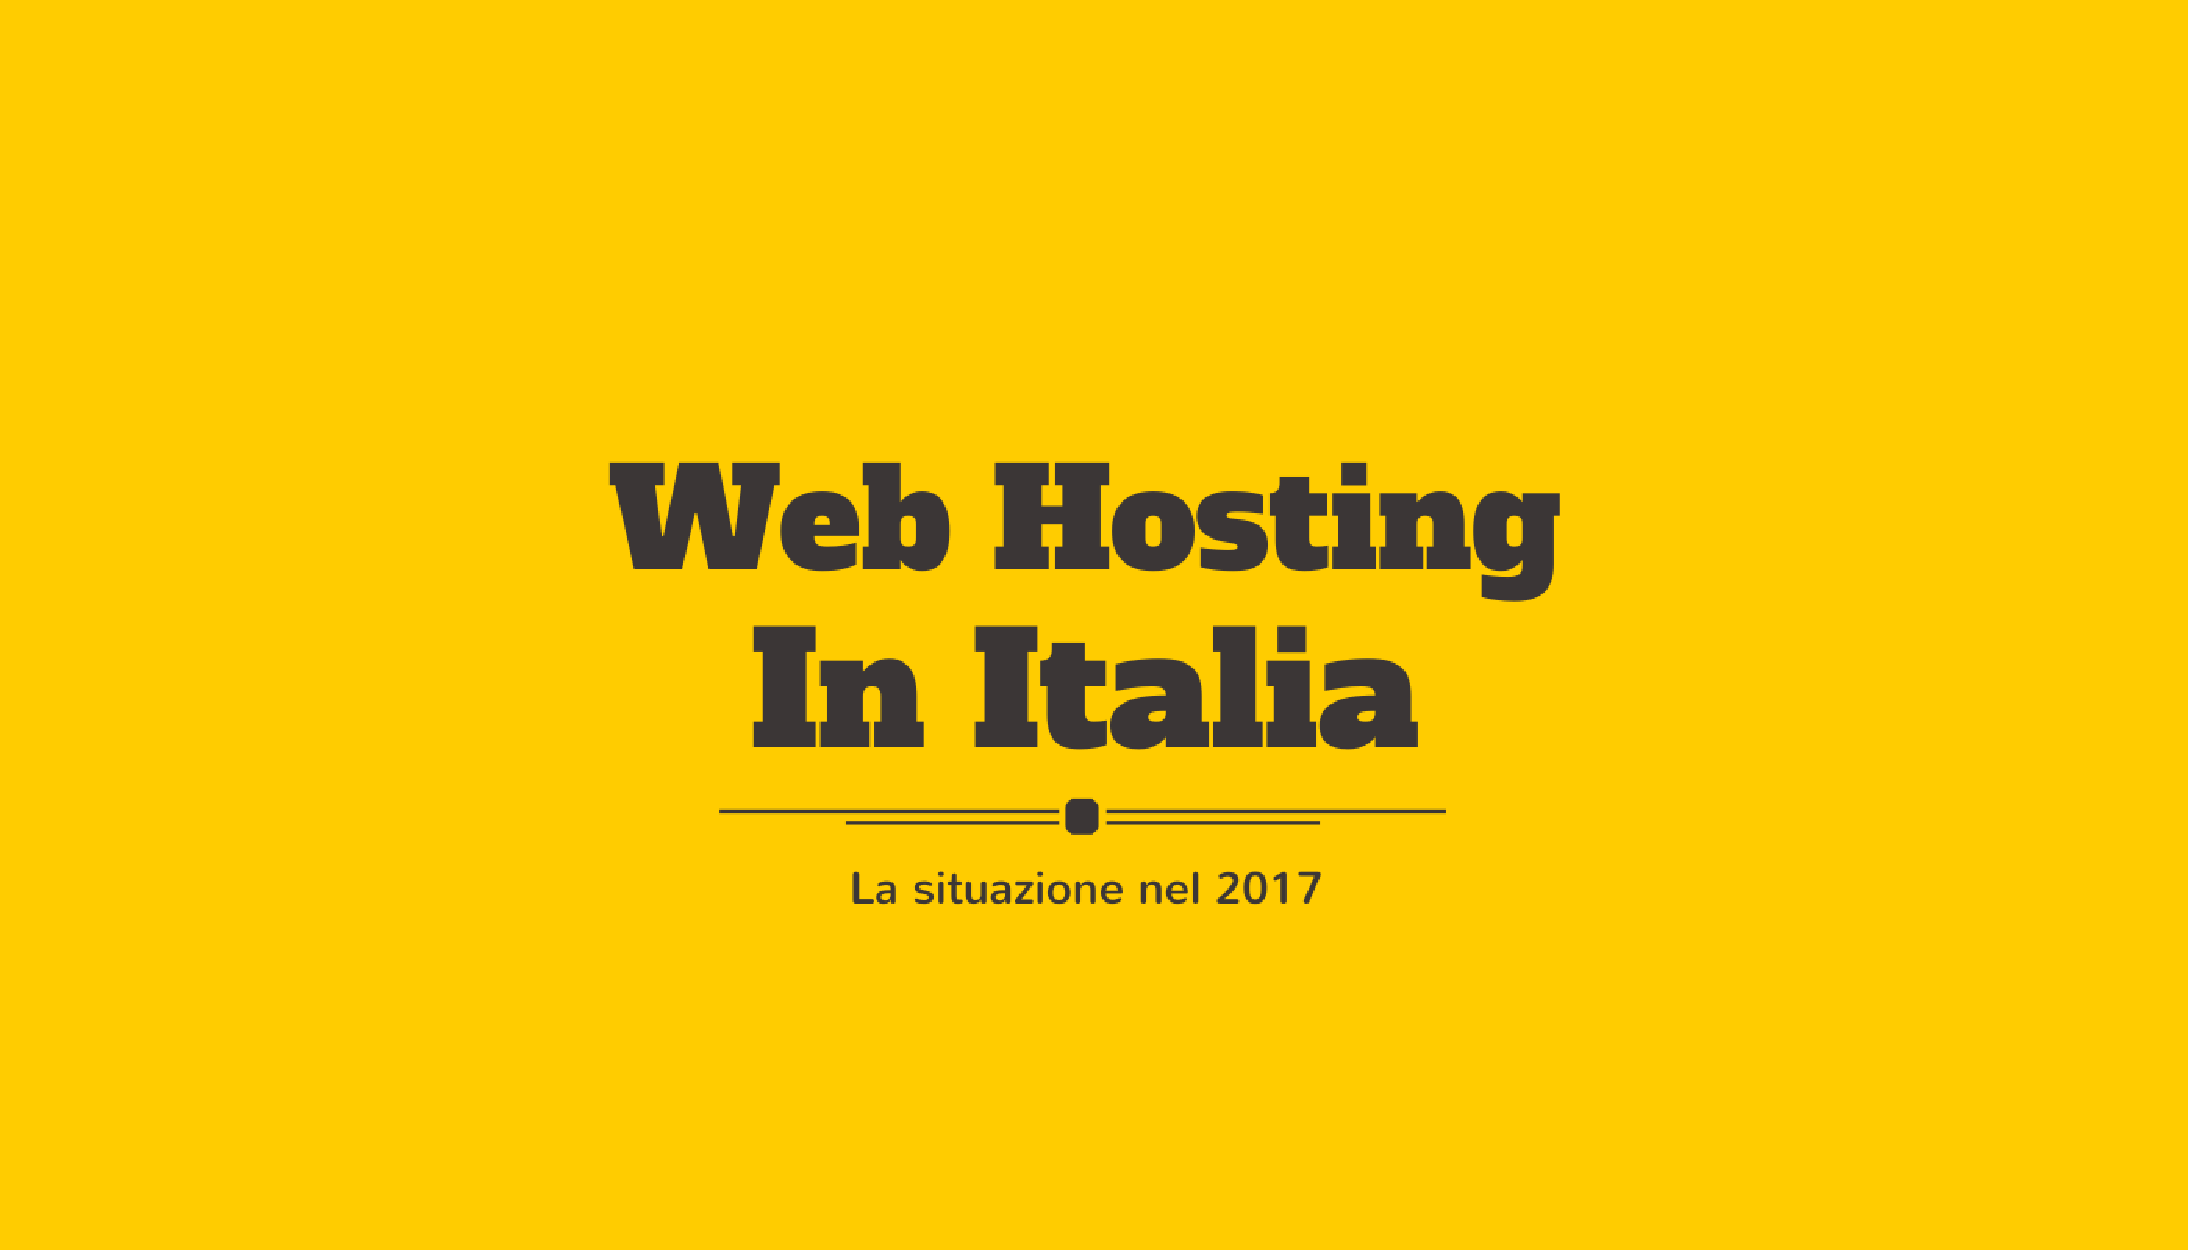 Web hosting in Italia, la situazione nel 2017